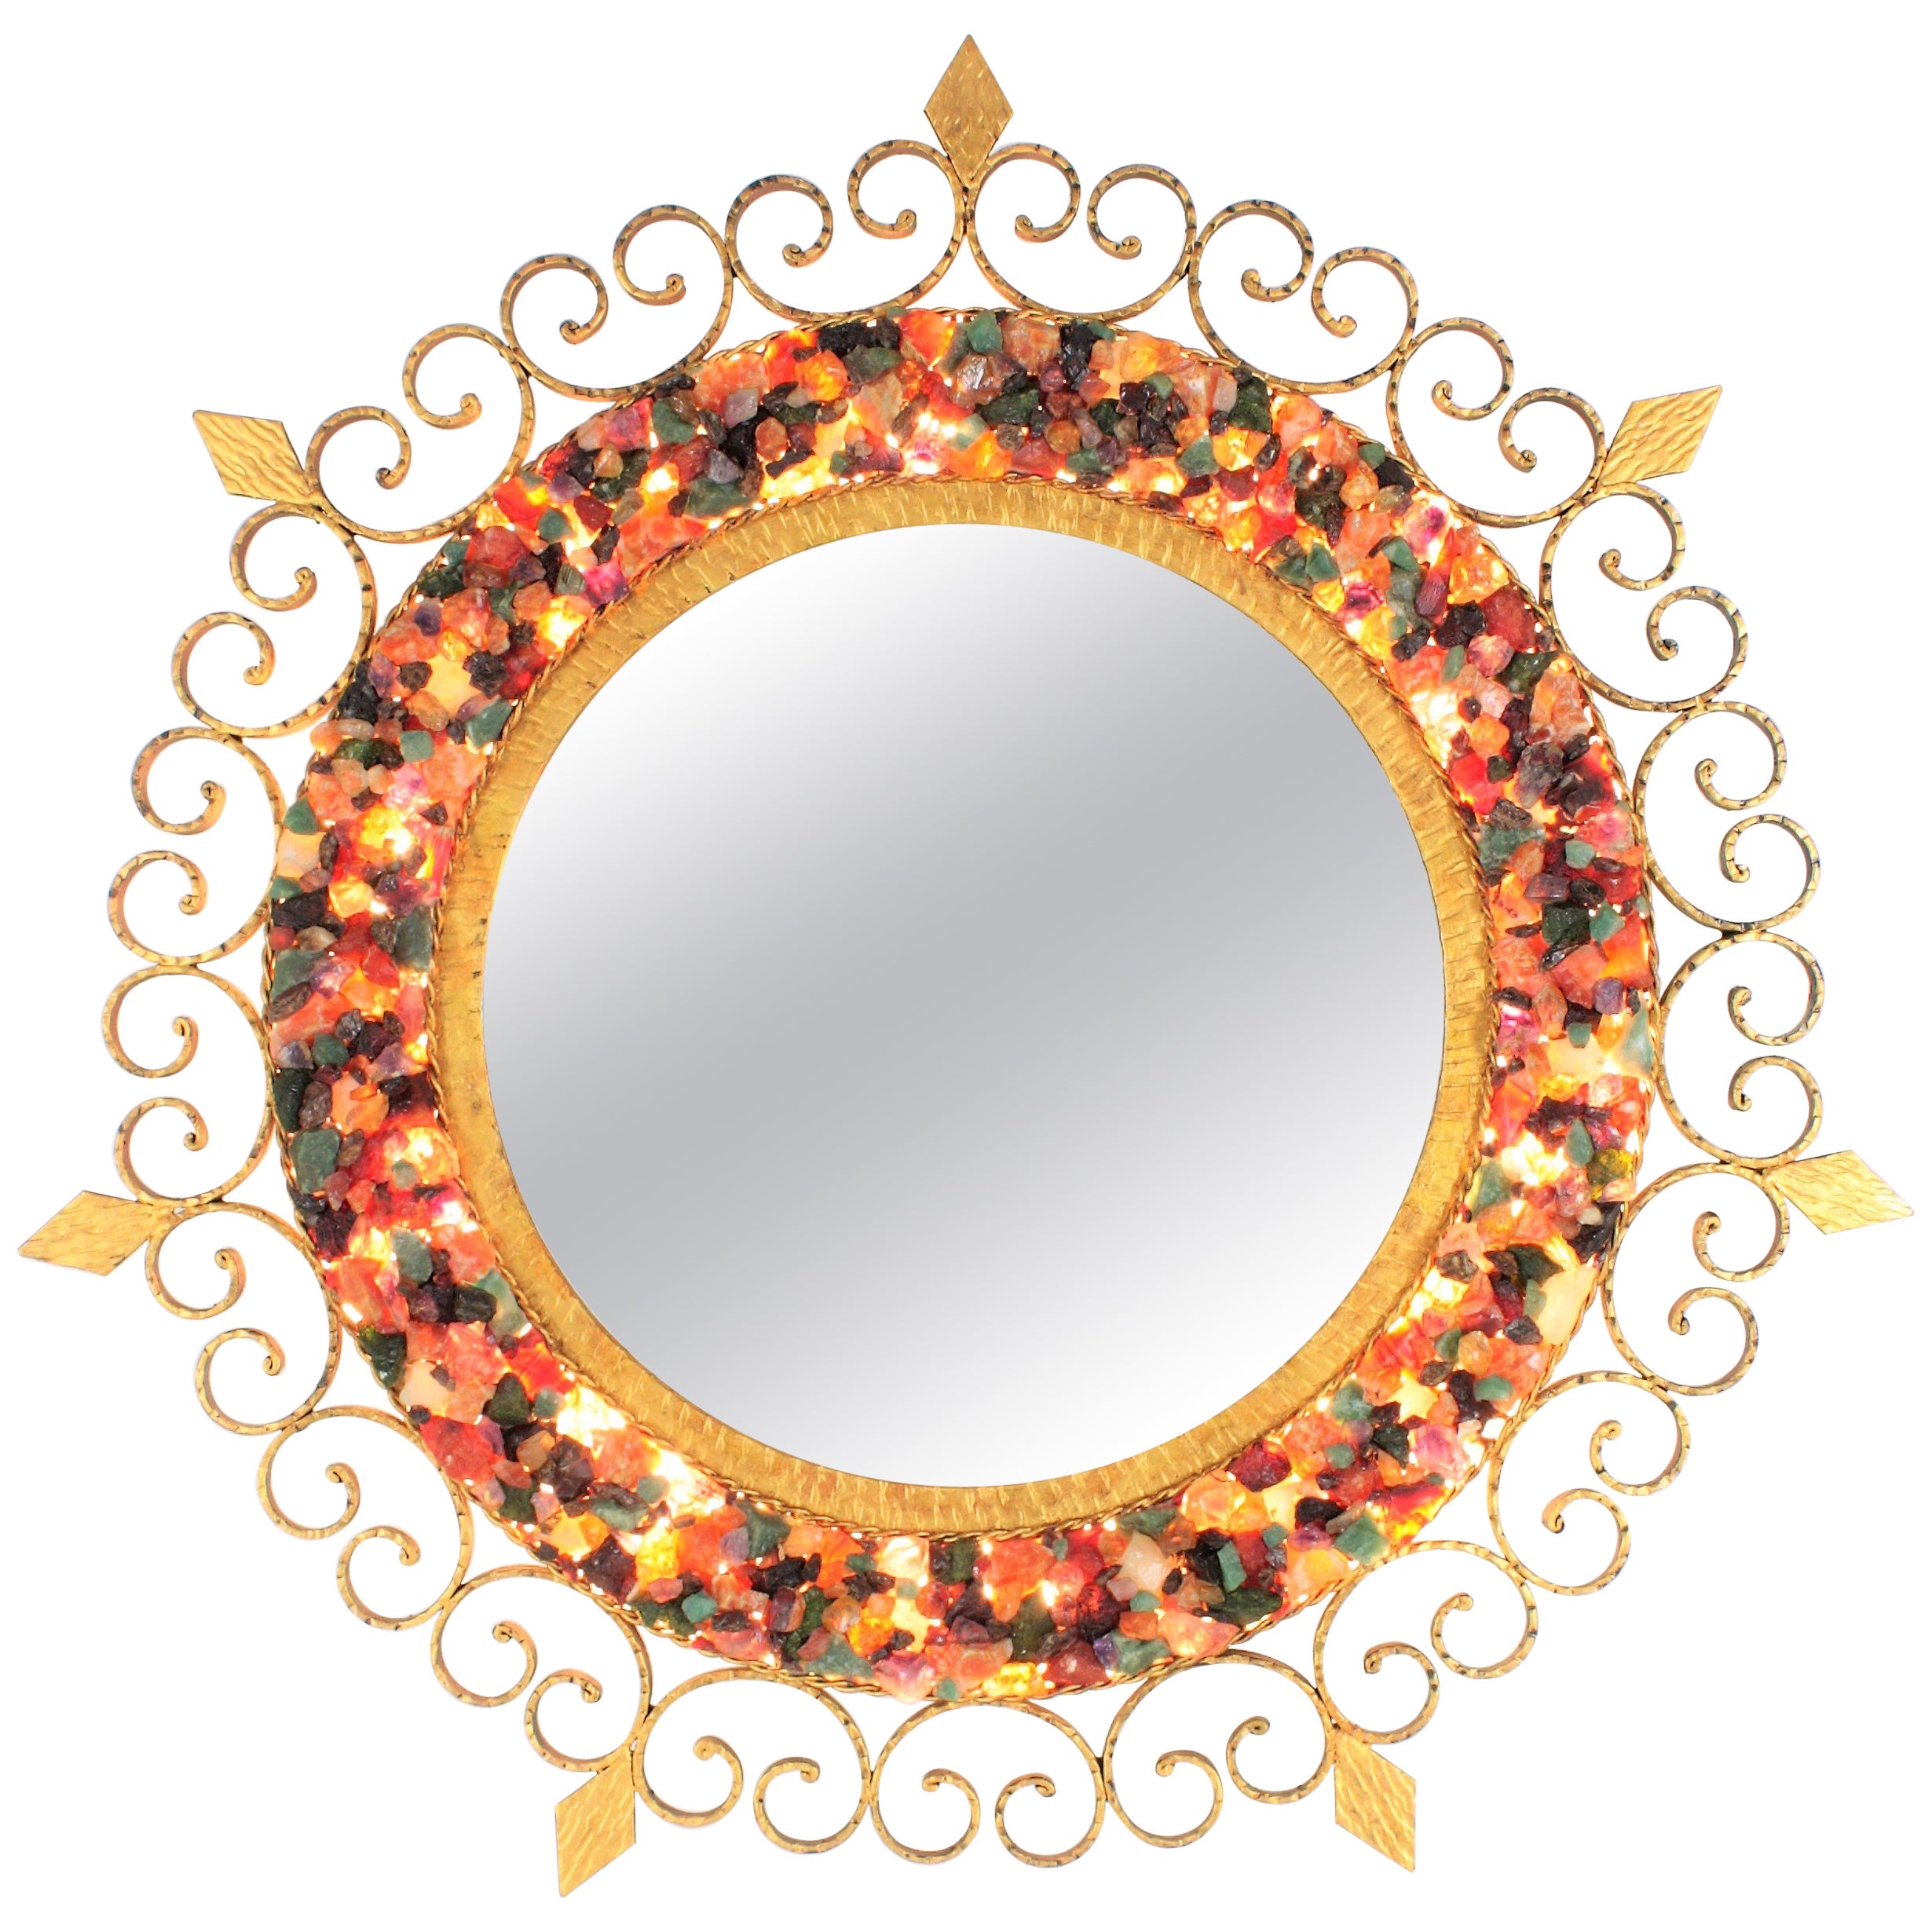 Beleuchteter Spiegel mit Sonnenschliff, Edelsteinrahmen, vergoldetes Eisen, Spanien, 1960er Jahre.
Außergewöhnlicher Spiegel aus vergoldetem Eisen mit Retro-Beleuchtung, umrahmt von einem Mosaik aus farbenfrohen natürlichen Edelsteinen.
Der mit